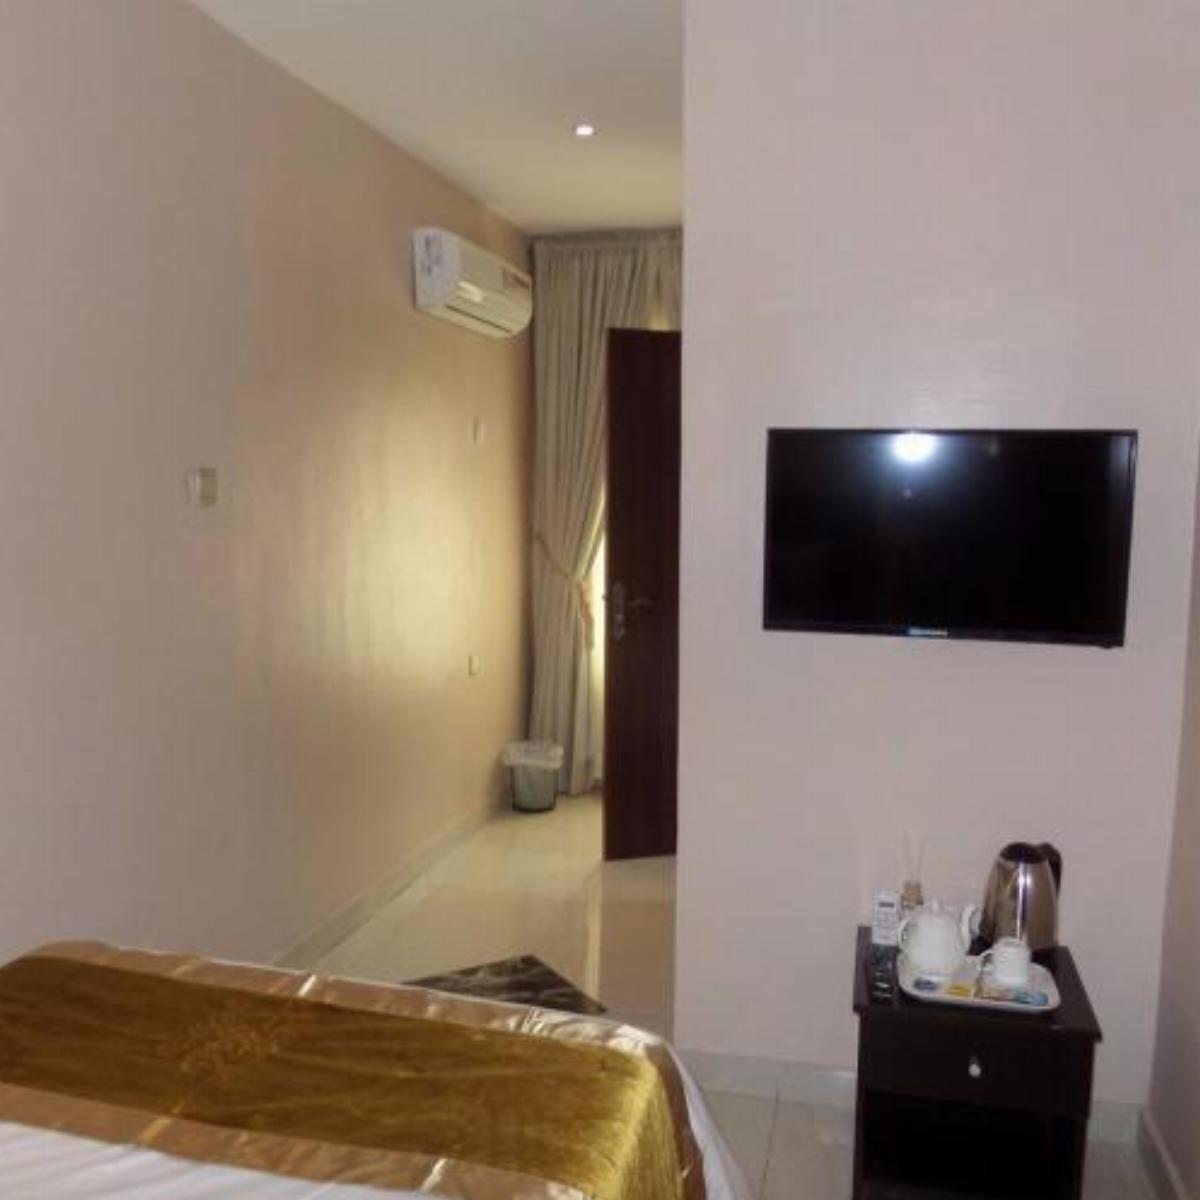 RightGate Hotel Hotel Lagos Nigeria